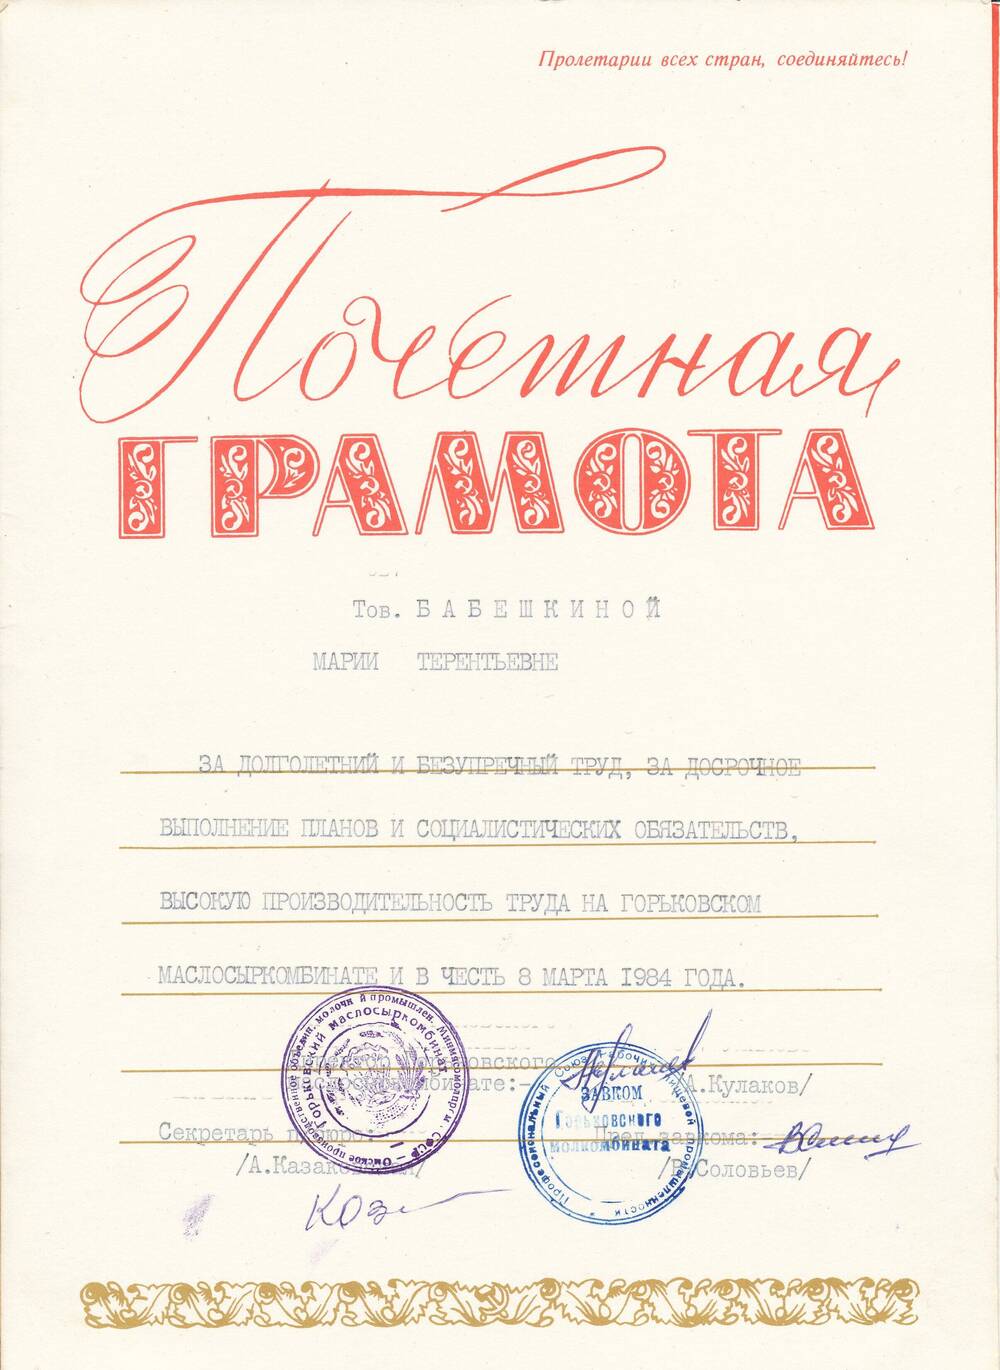 Почетная грамота Бабешкиной Марии Терентьевны от администрации МСК от 7.03.84г. за досрочное выполнение соцобязательств